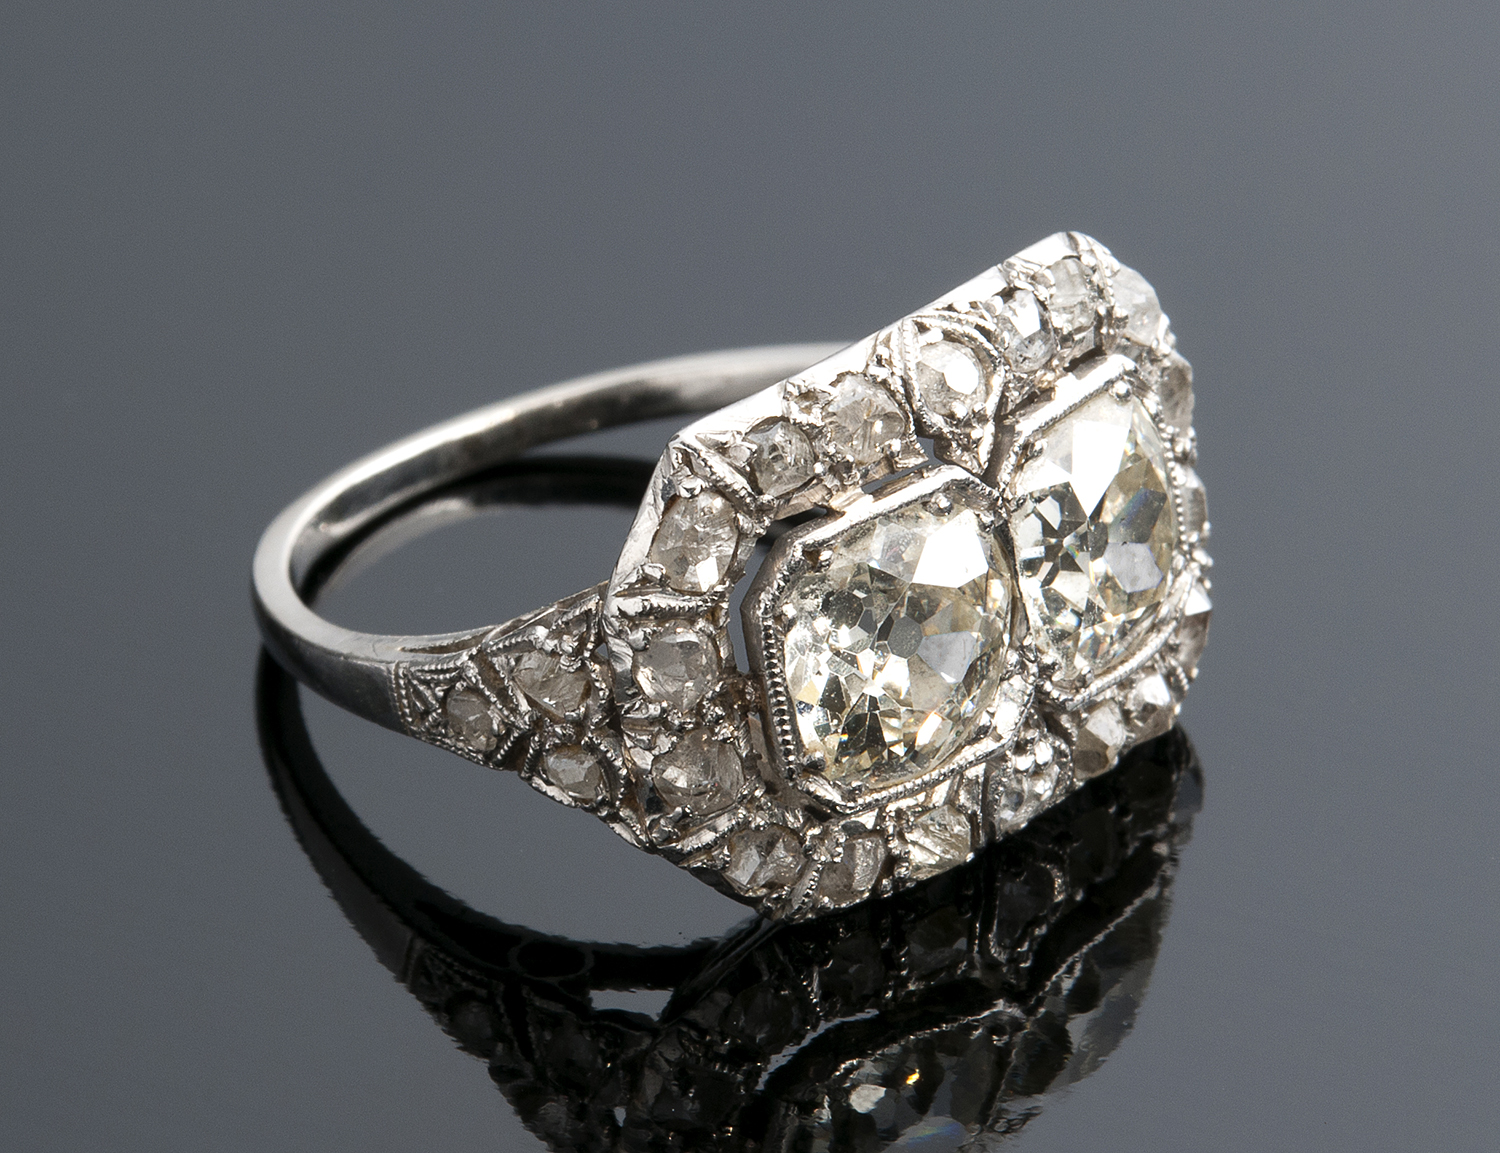 Anello in platino, diamanti - anni ‘20 del XX secolo; ; con coppia di grandio diamanti taglio “